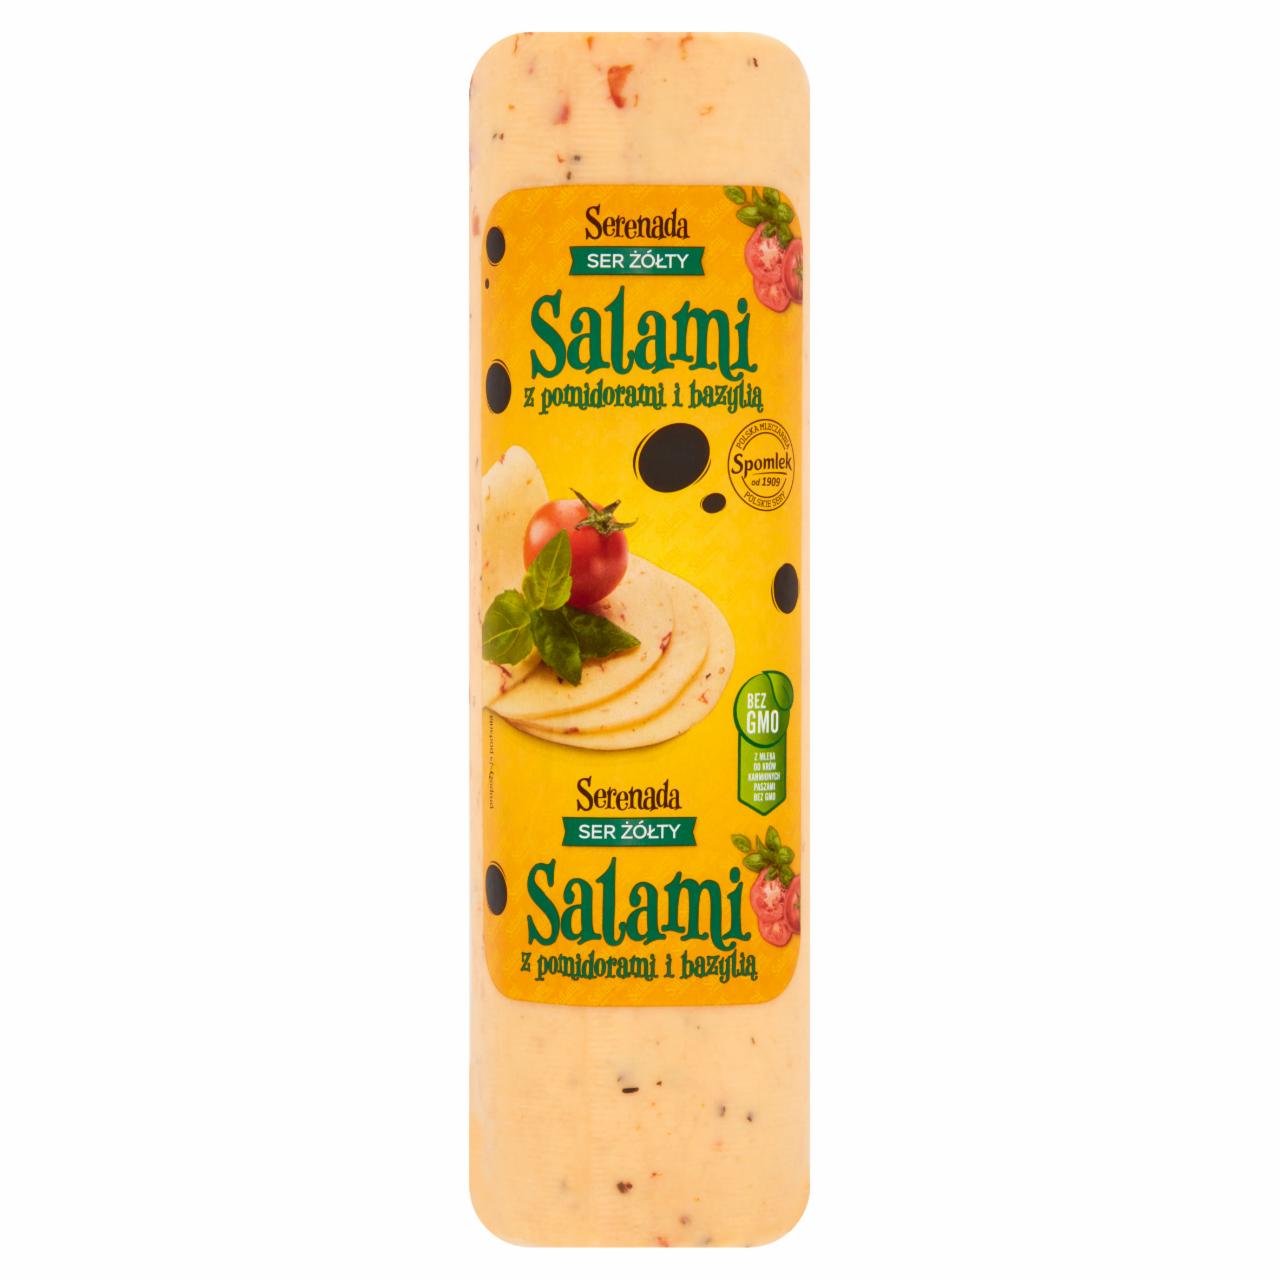 Zdjęcia - Serenada Ser żółty Salami z pomidorami i bazylią